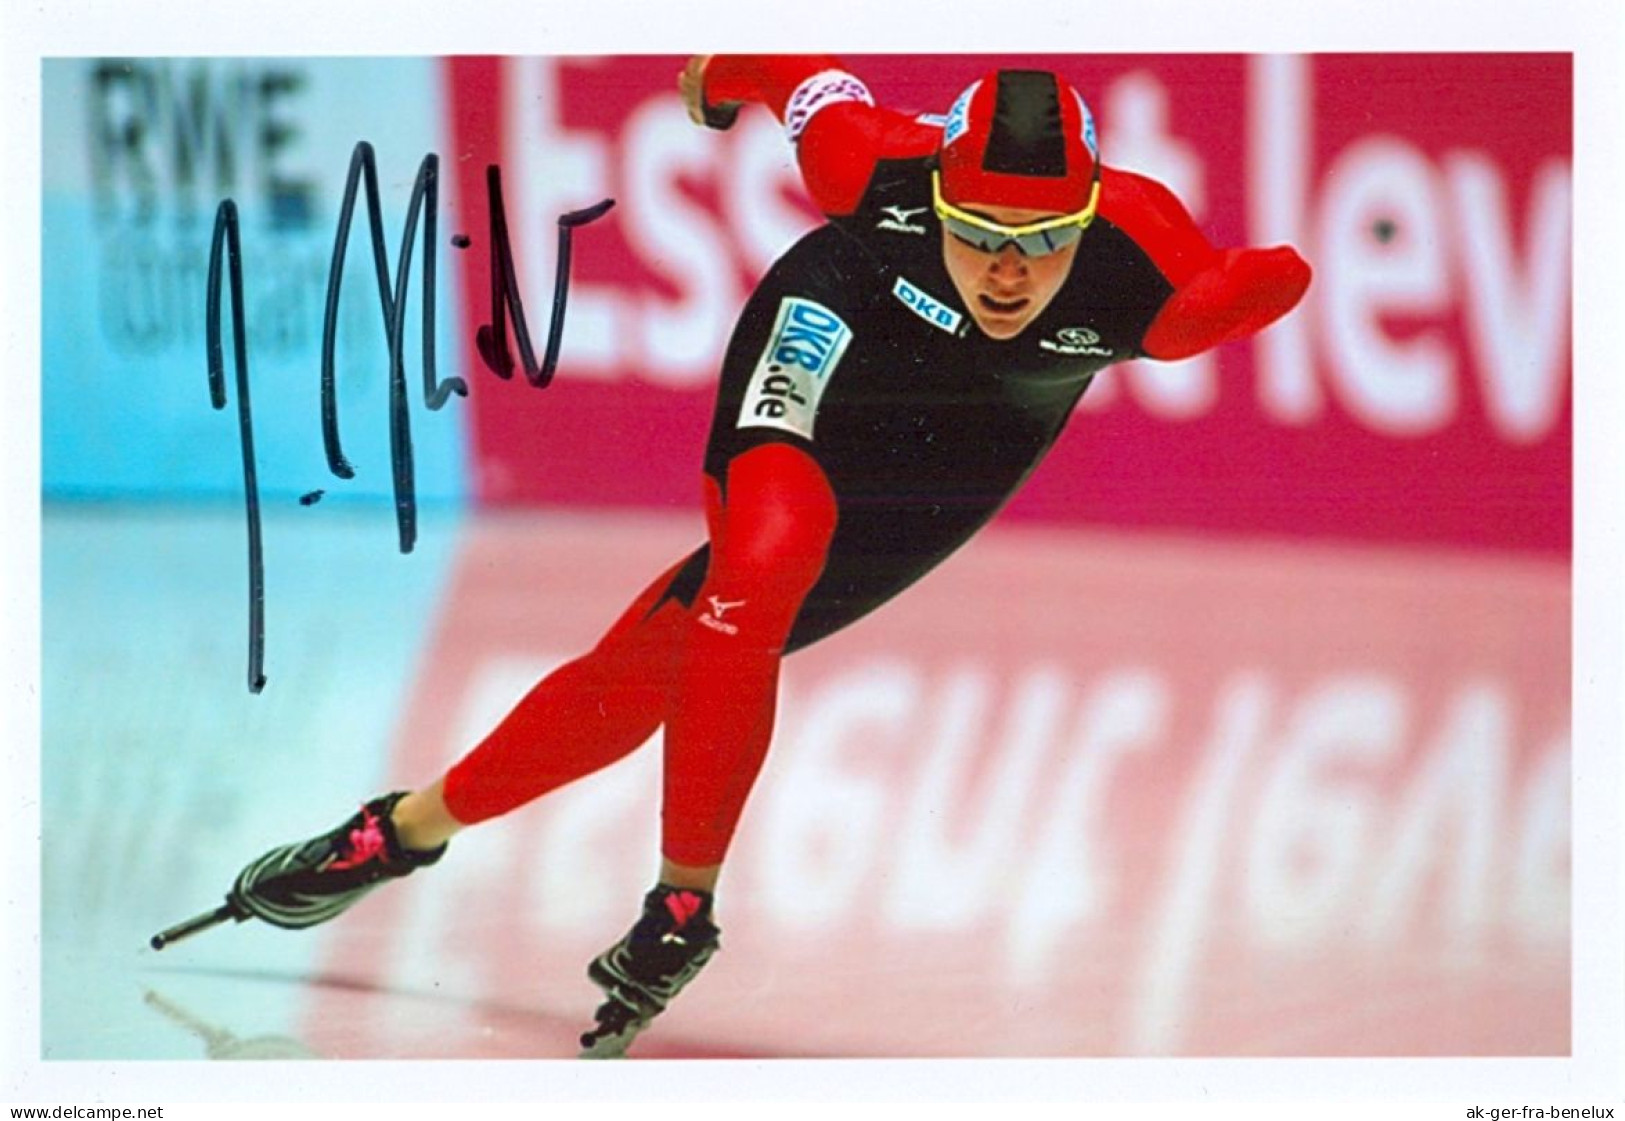 Autogramm Foto Eisschnellläufer Jonas Pflug Deutschland Schaatsen Ice Speed Vskating Patinage De Vitesse Pattinaggio - Wintersport